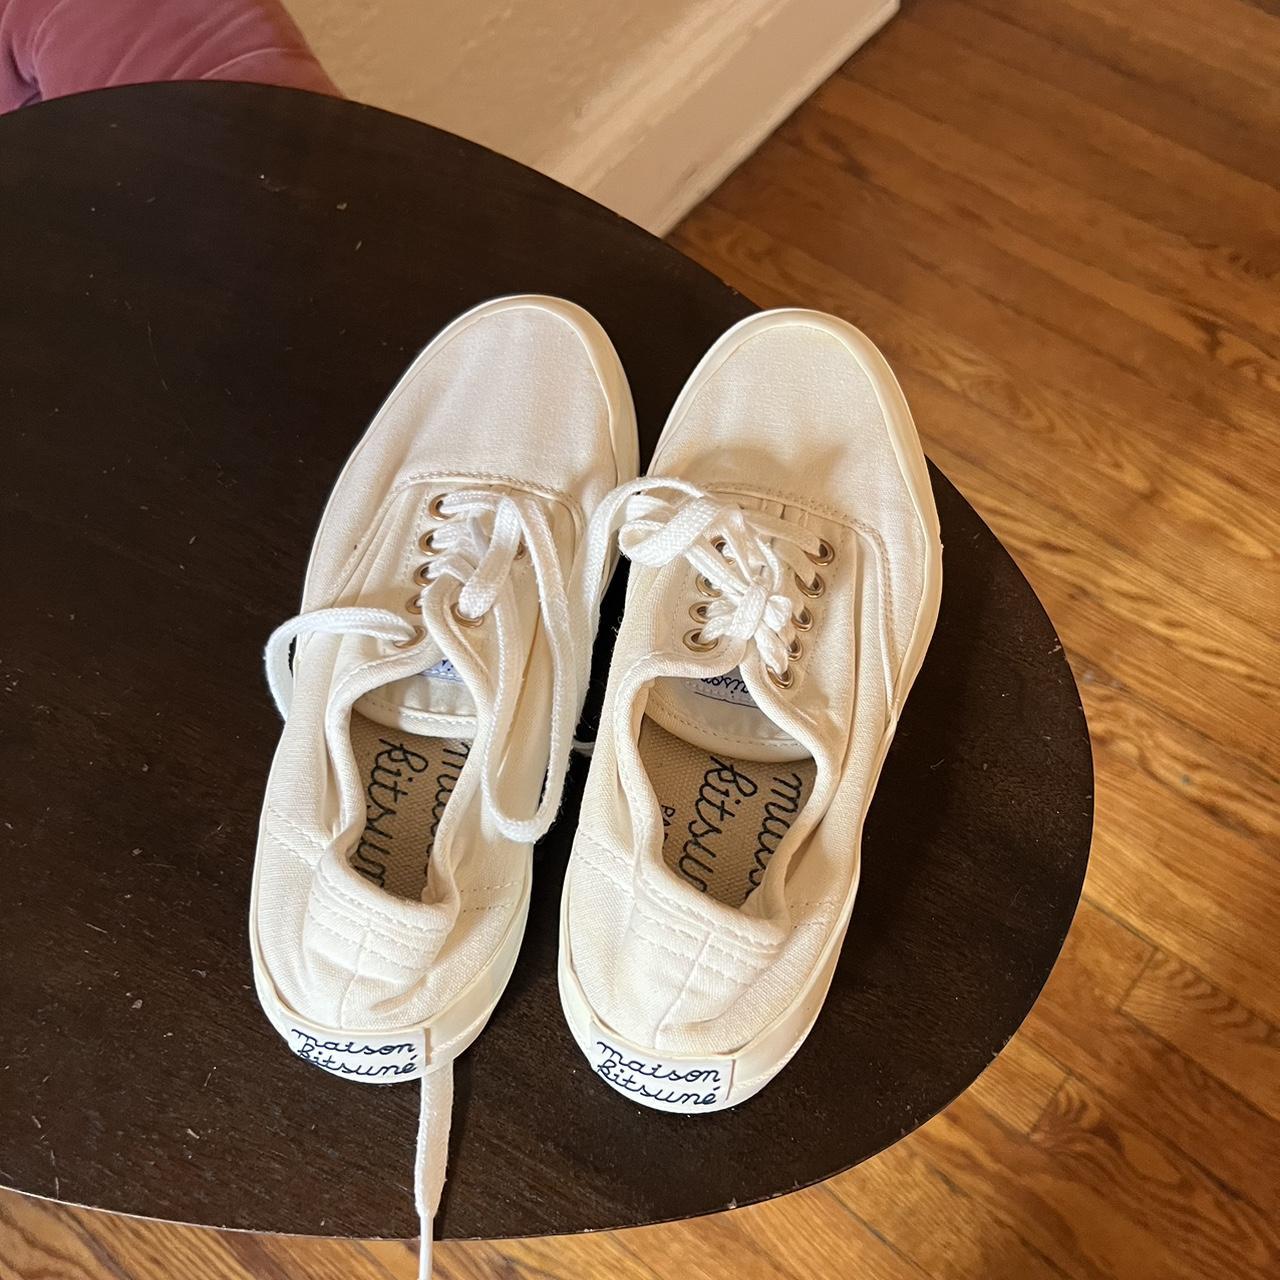 Madison Kitsune Shoes - Size 5 US - Depop